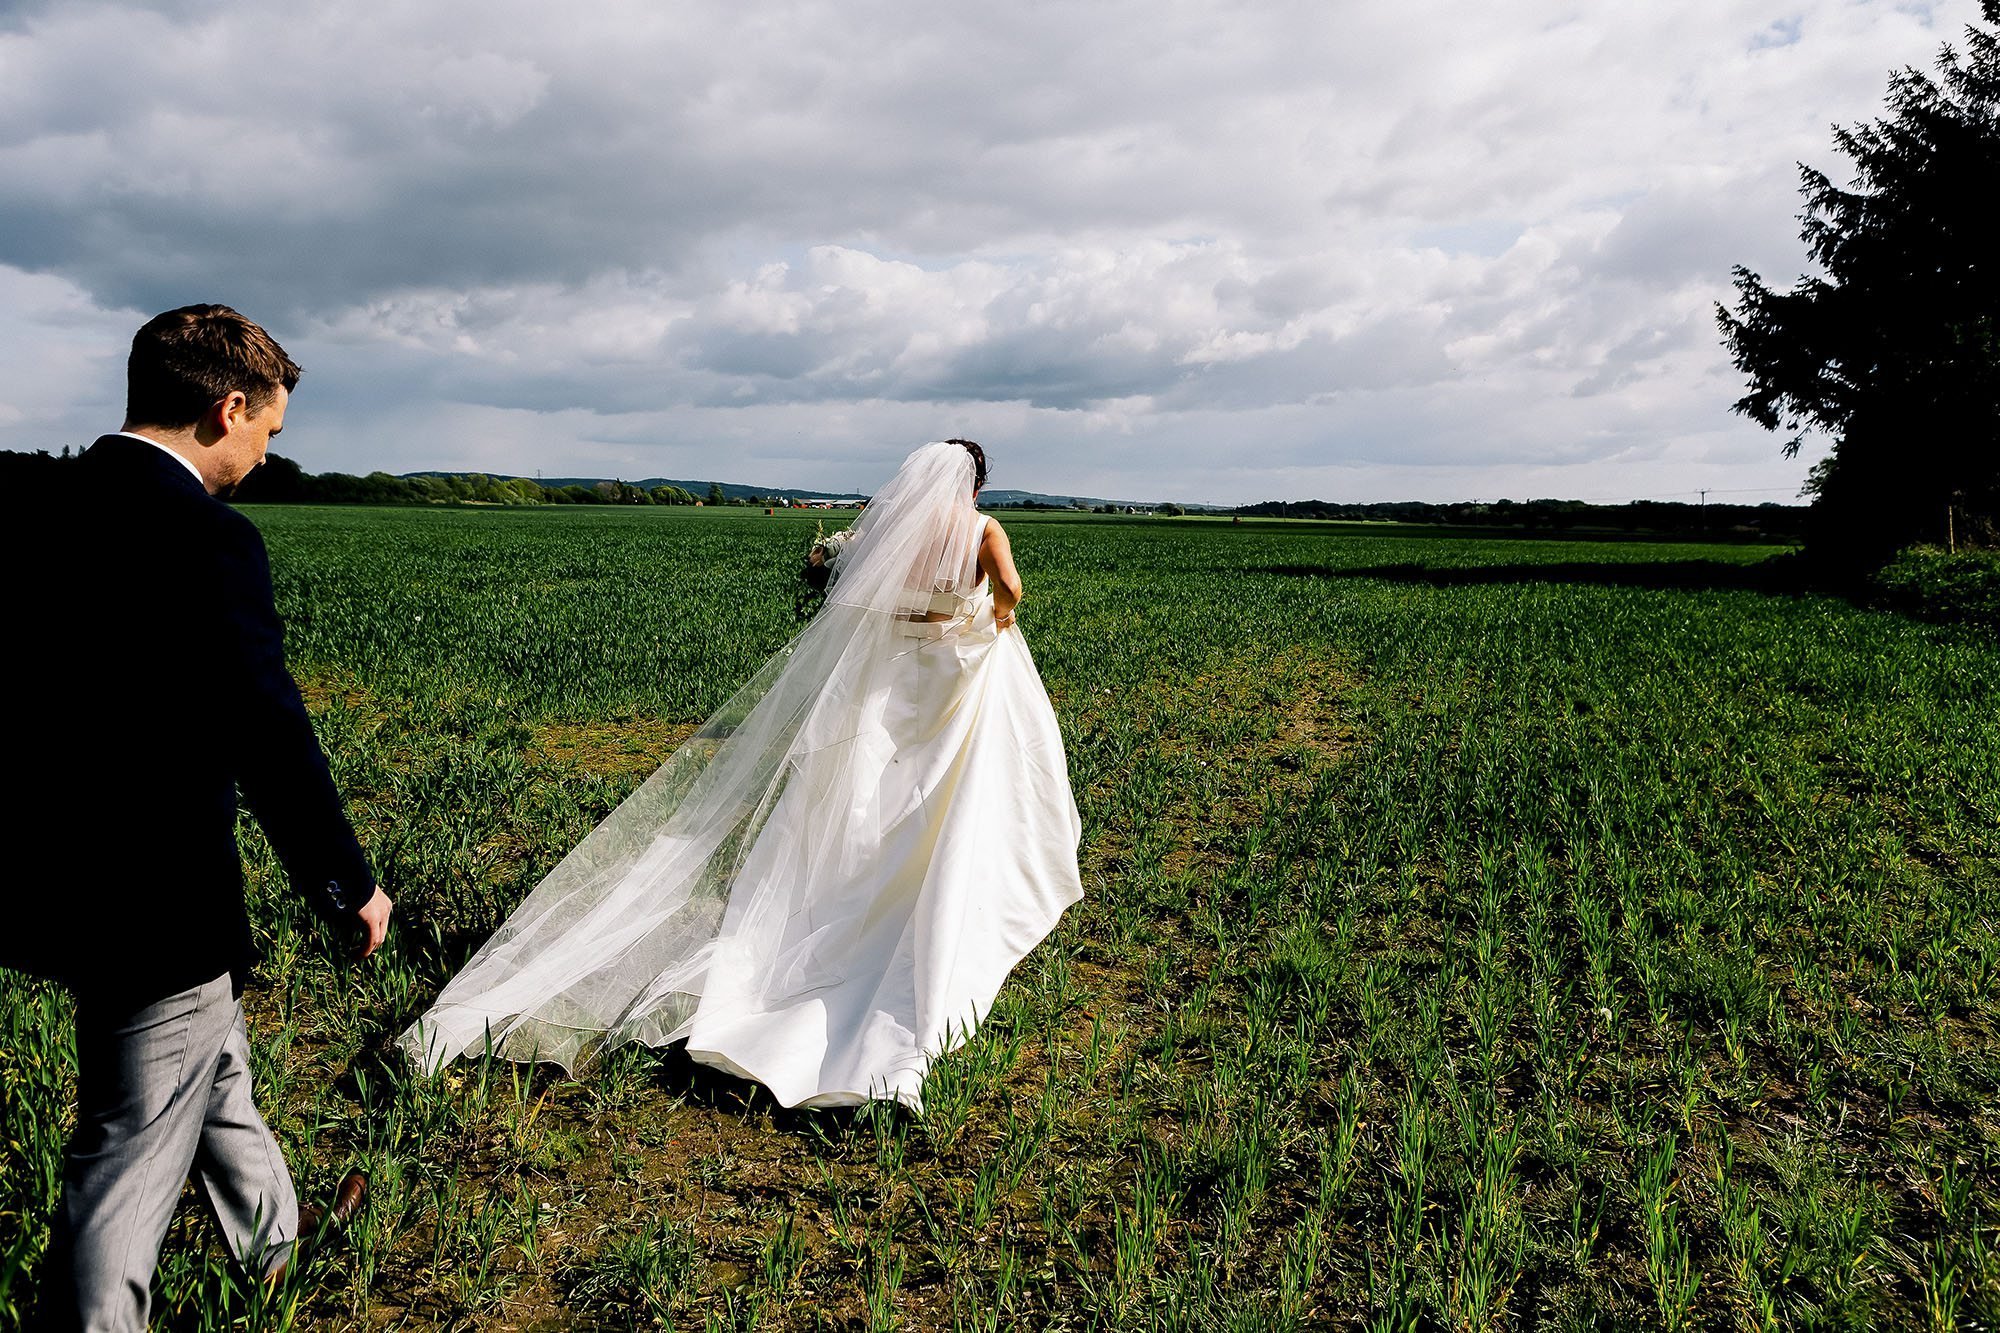 Wedding in garden at Home in Preston - Preston Wedding Photographer